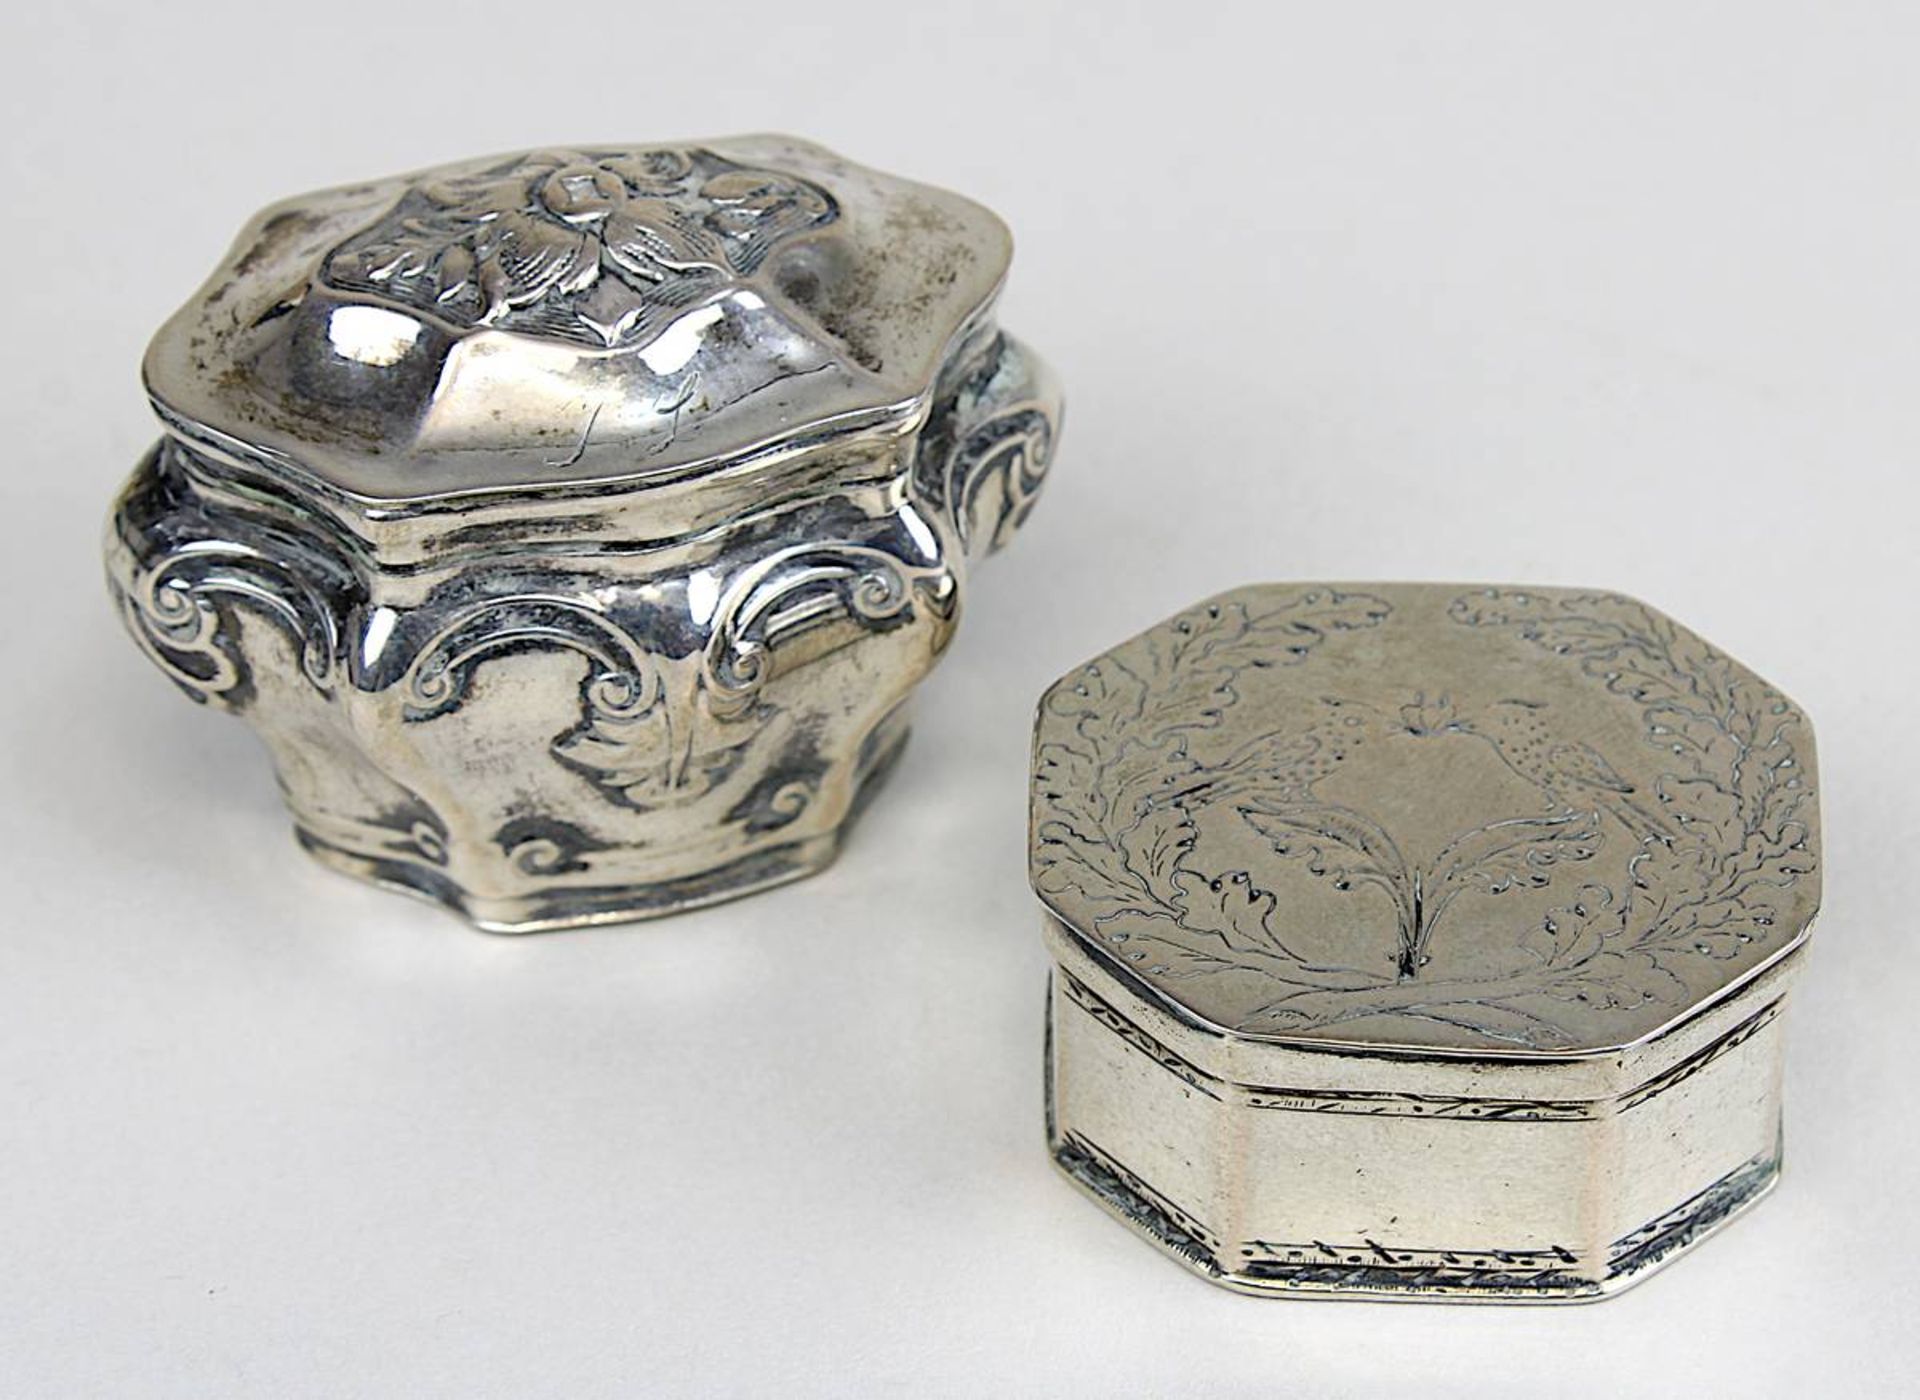 Riechdöschen und kleines Döschen, Silber, 19. Jh., Silber nicht gepunzt, aber geprüft: oktogonales